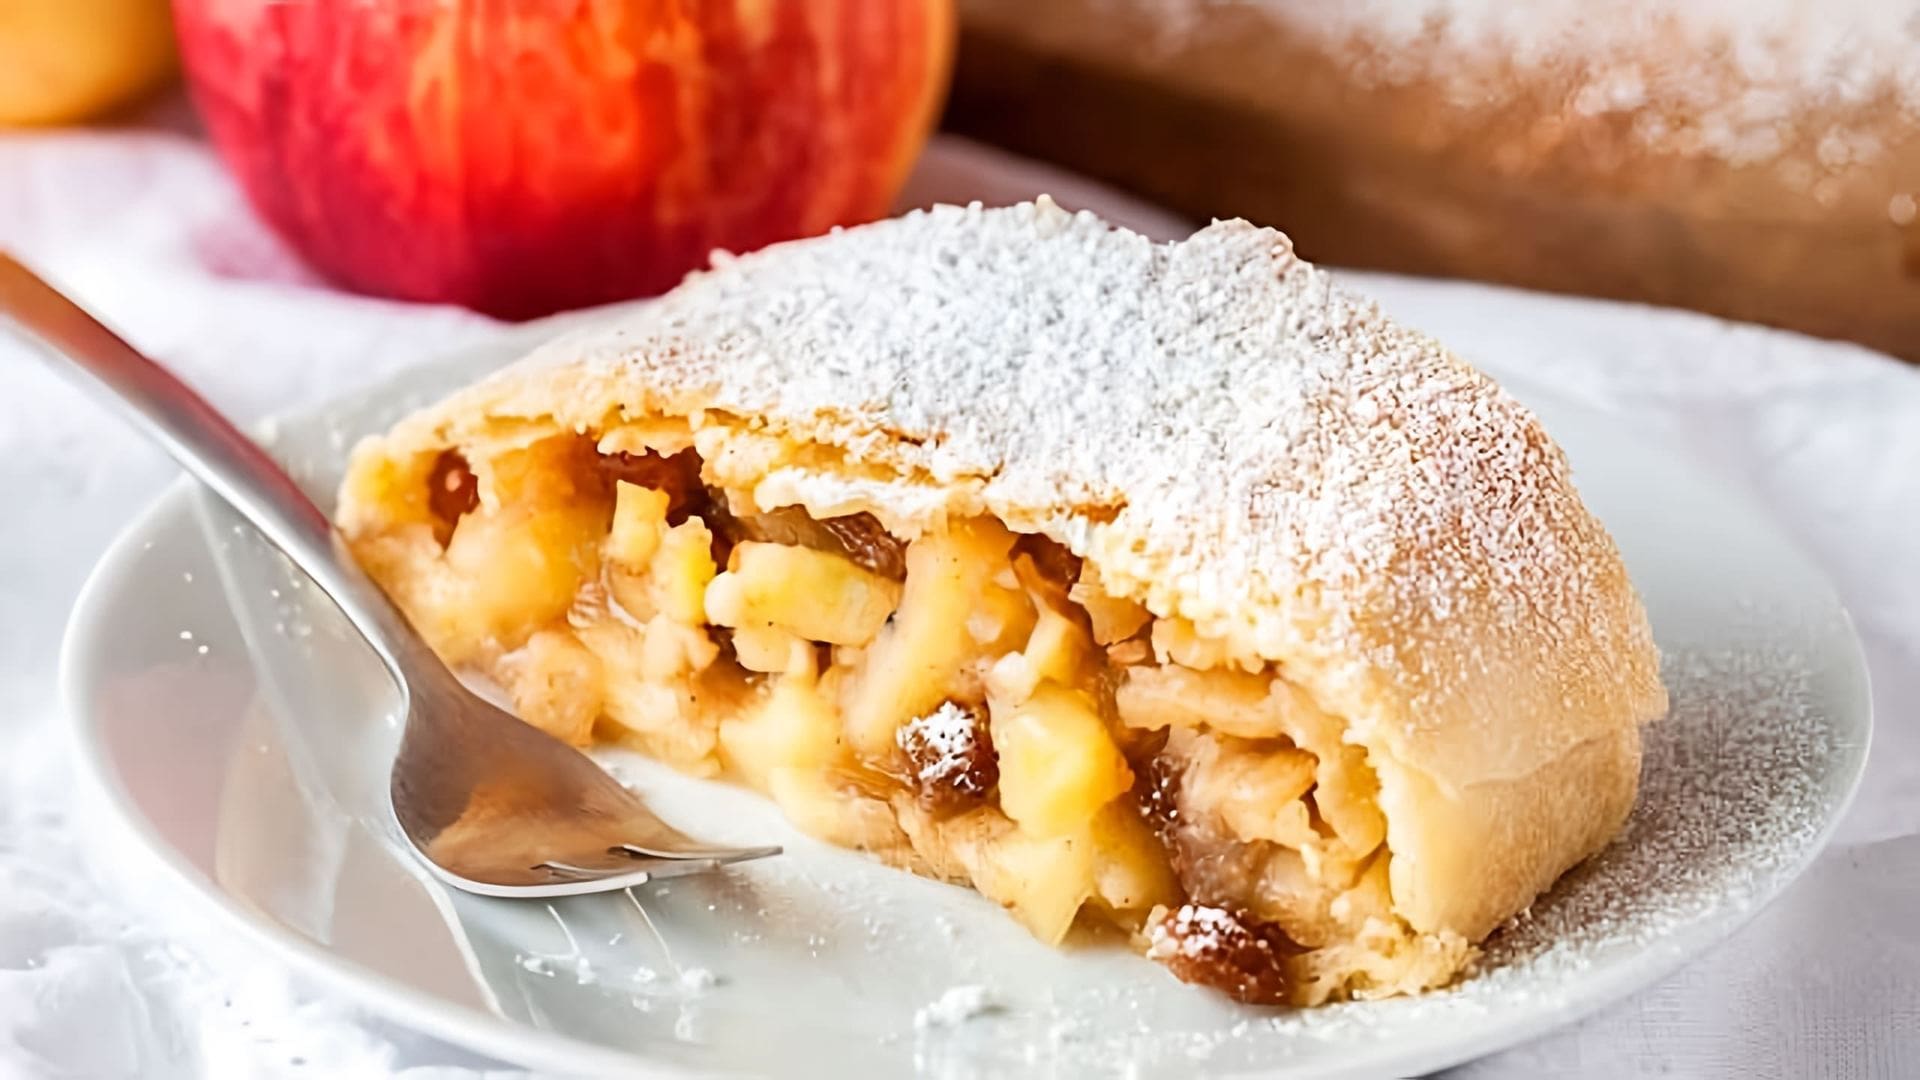 В этом видео демонстрируется рецепт приготовления Венского яблочного штруделя